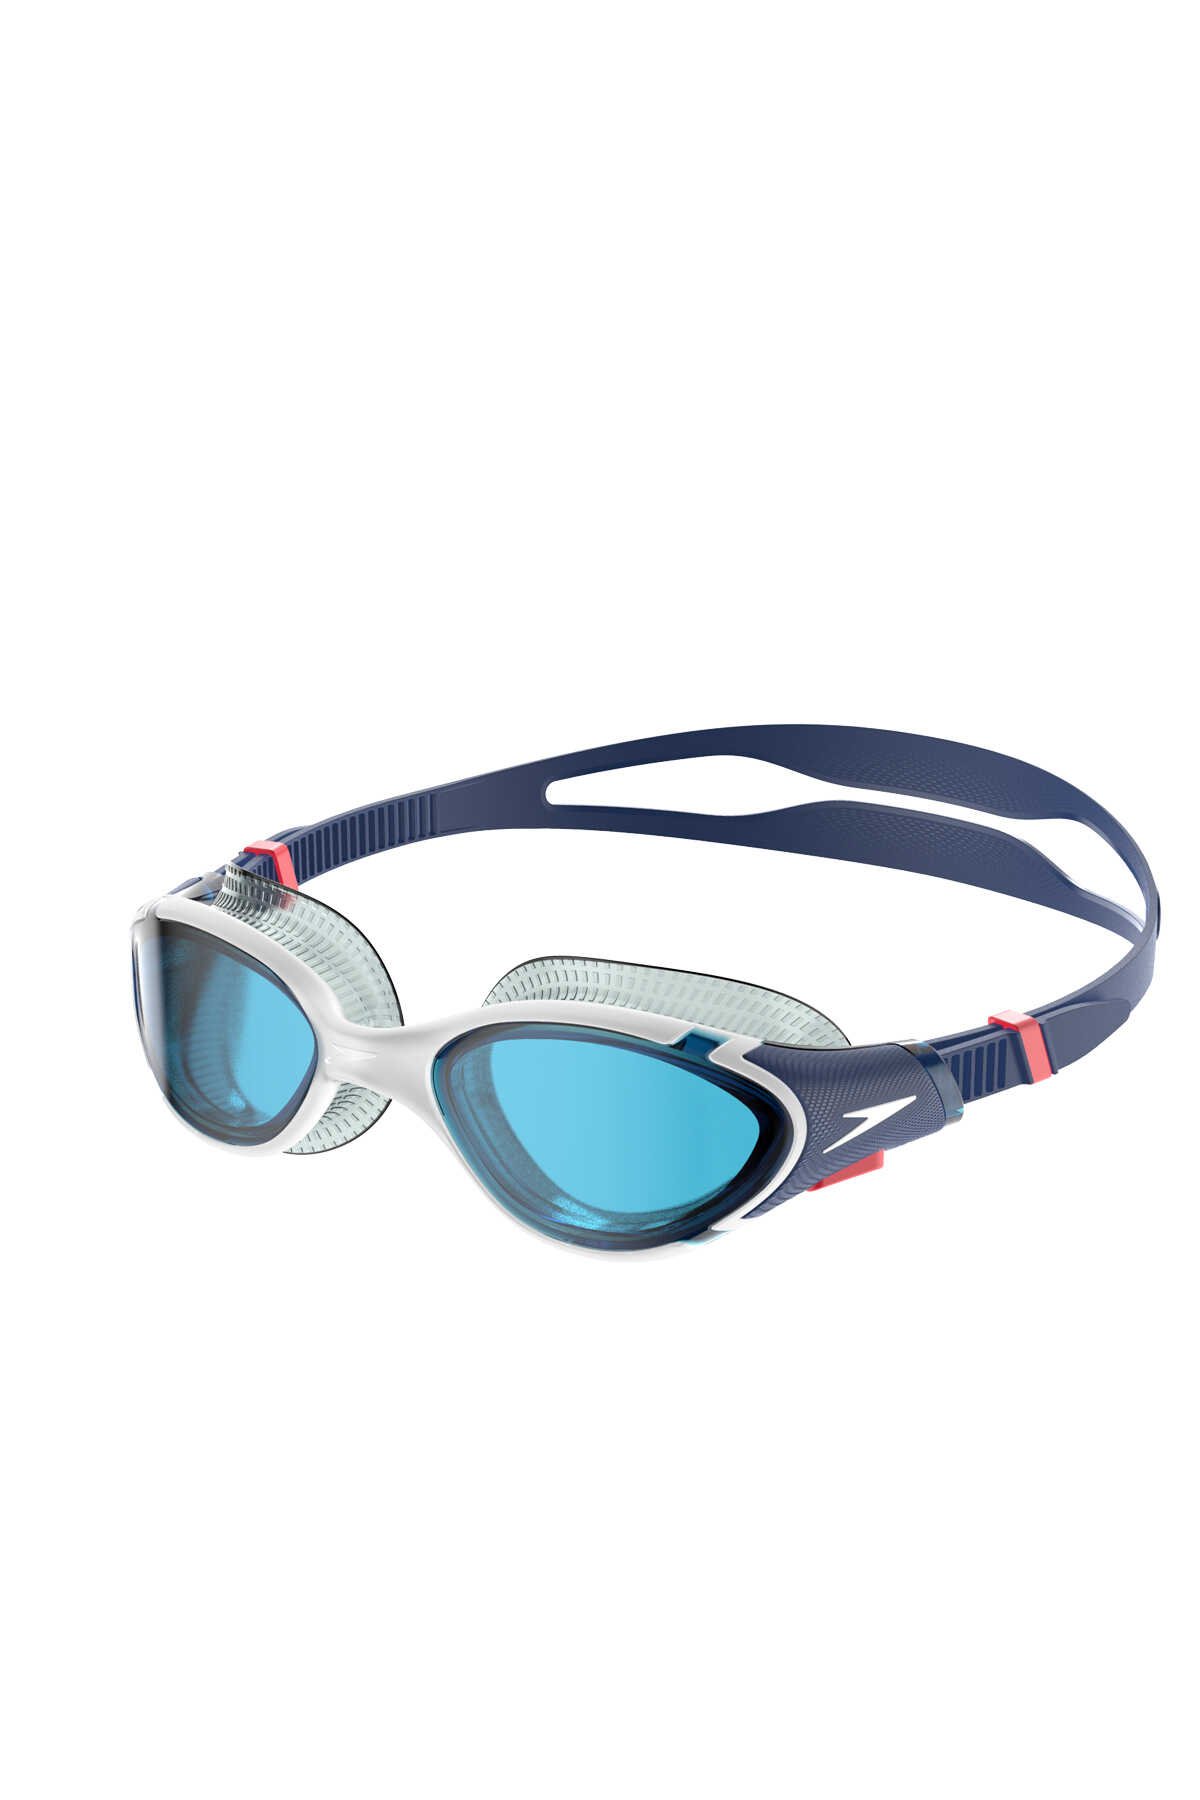 Speedo - Speedo BIOFUSE REFLEX GOG AU 4 Yüzücü Gözlüğü Renk Baskılı